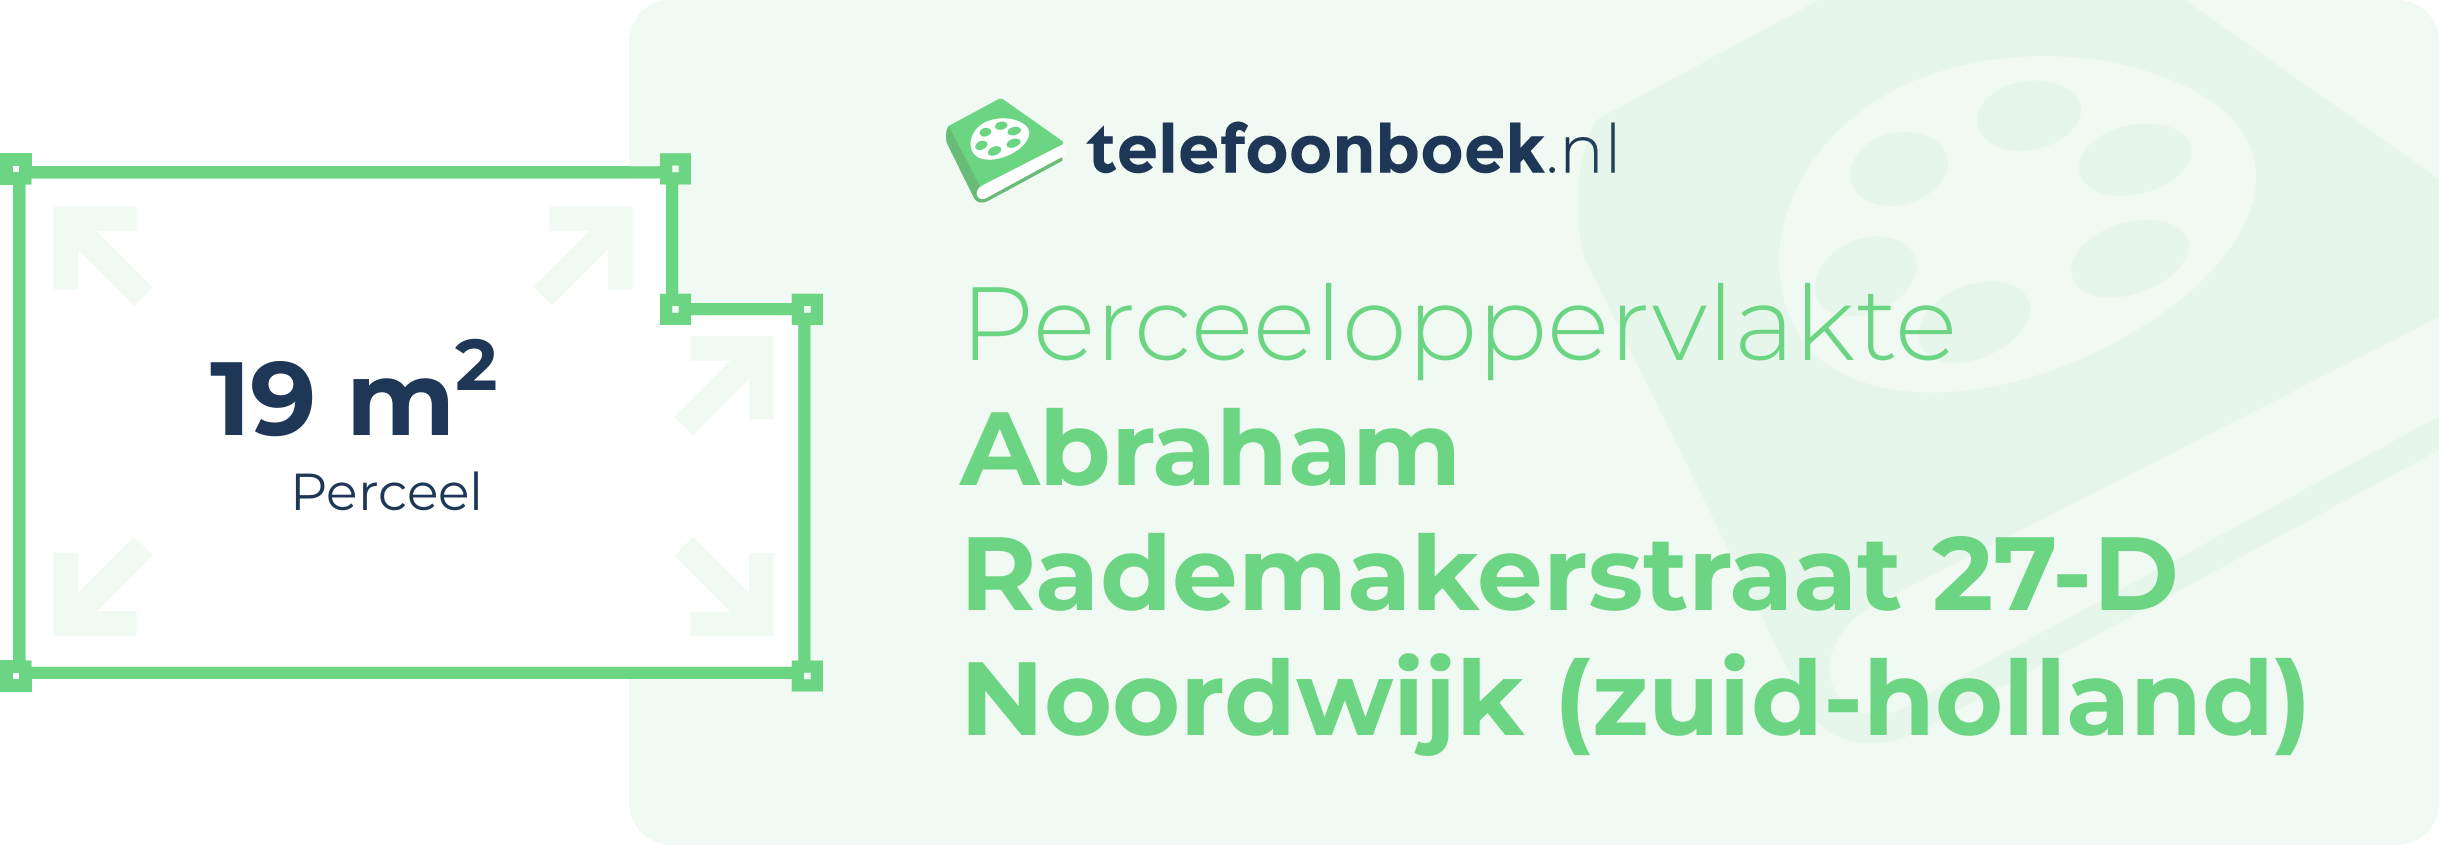 Perceeloppervlakte Abraham Rademakerstraat 27-D Noordwijk (Zuid-Holland)